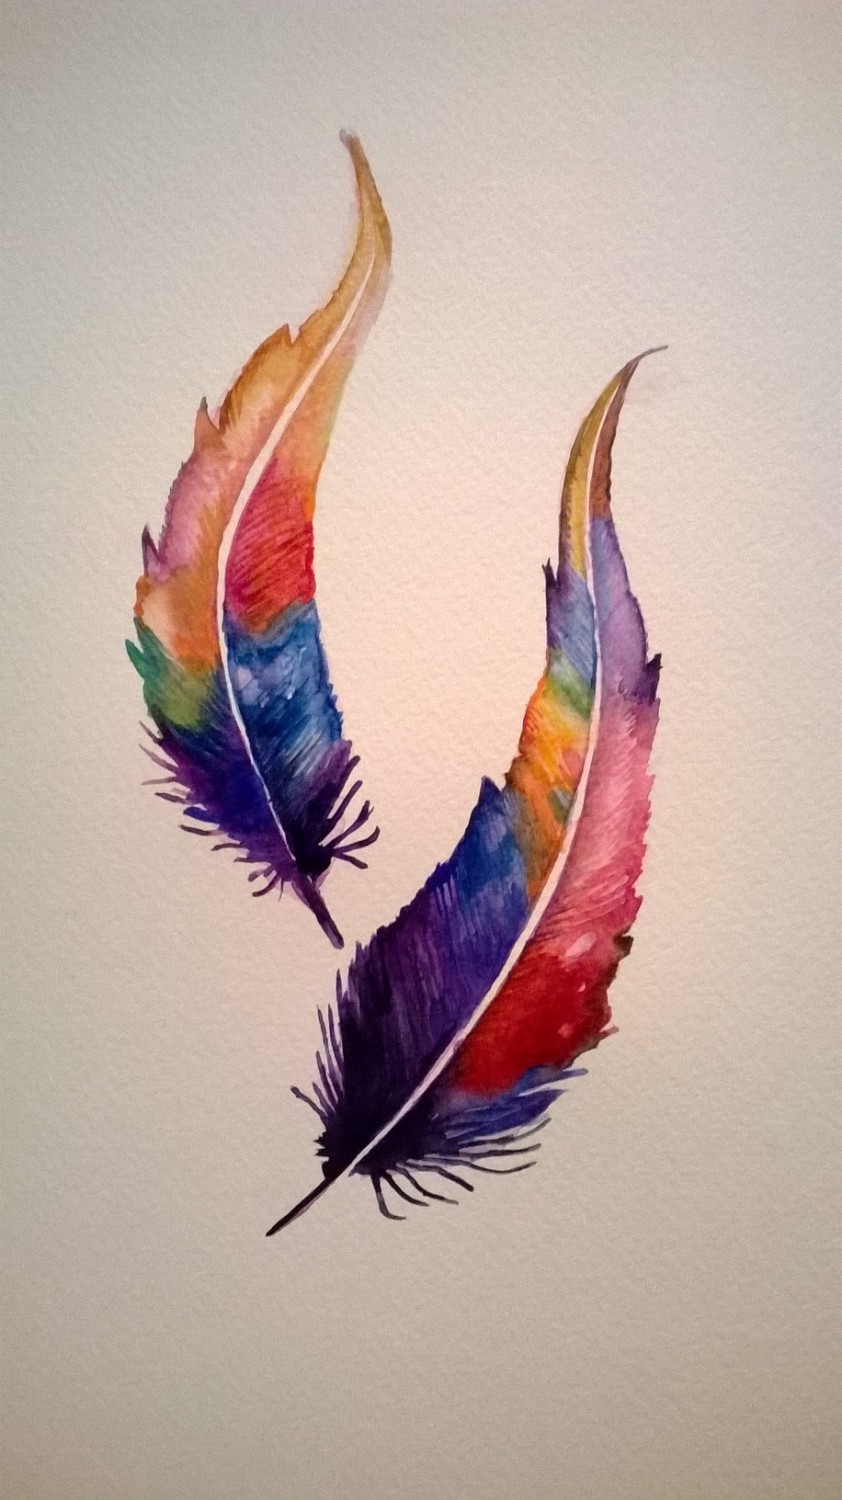 Work in Progress: Feathers 4